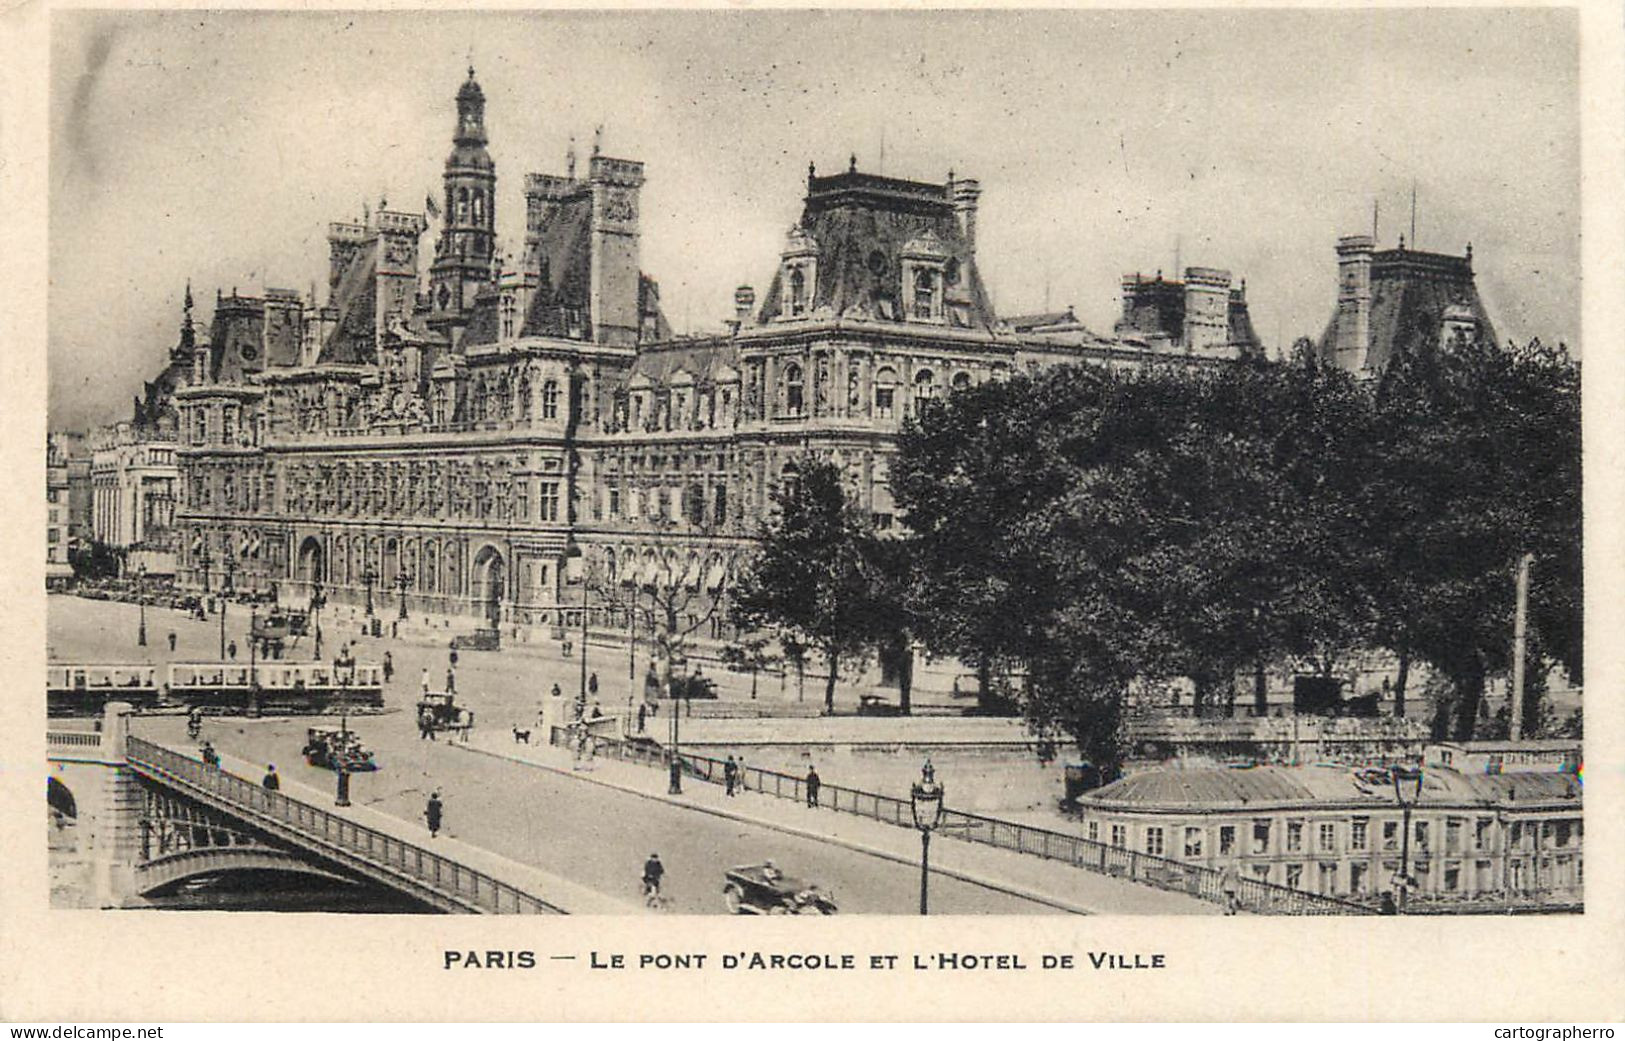 Postcard France Paris Le Pont D'Arcole - Sonstige Sehenswürdigkeiten